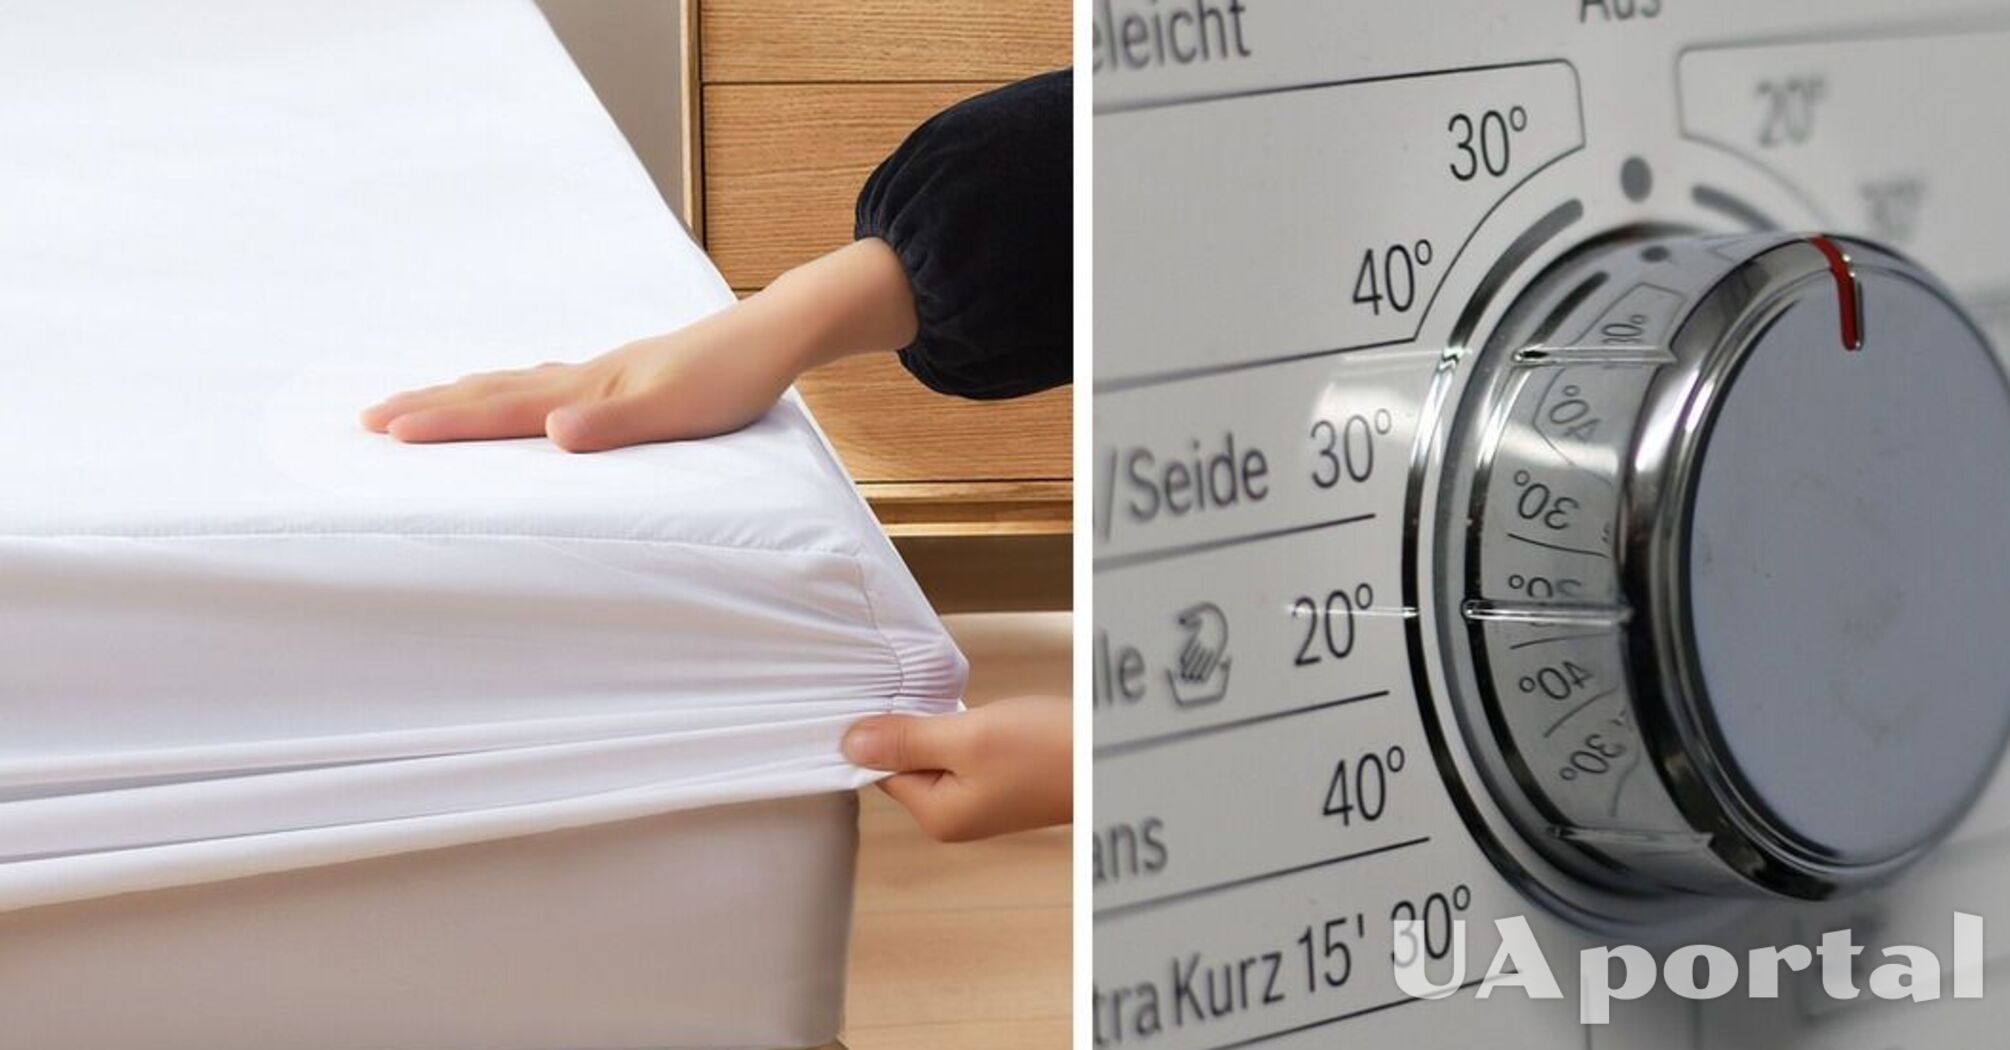 Спеціаліст пояснив, чому не варто прати постіль при 60 градусах: Пошкодите тканину